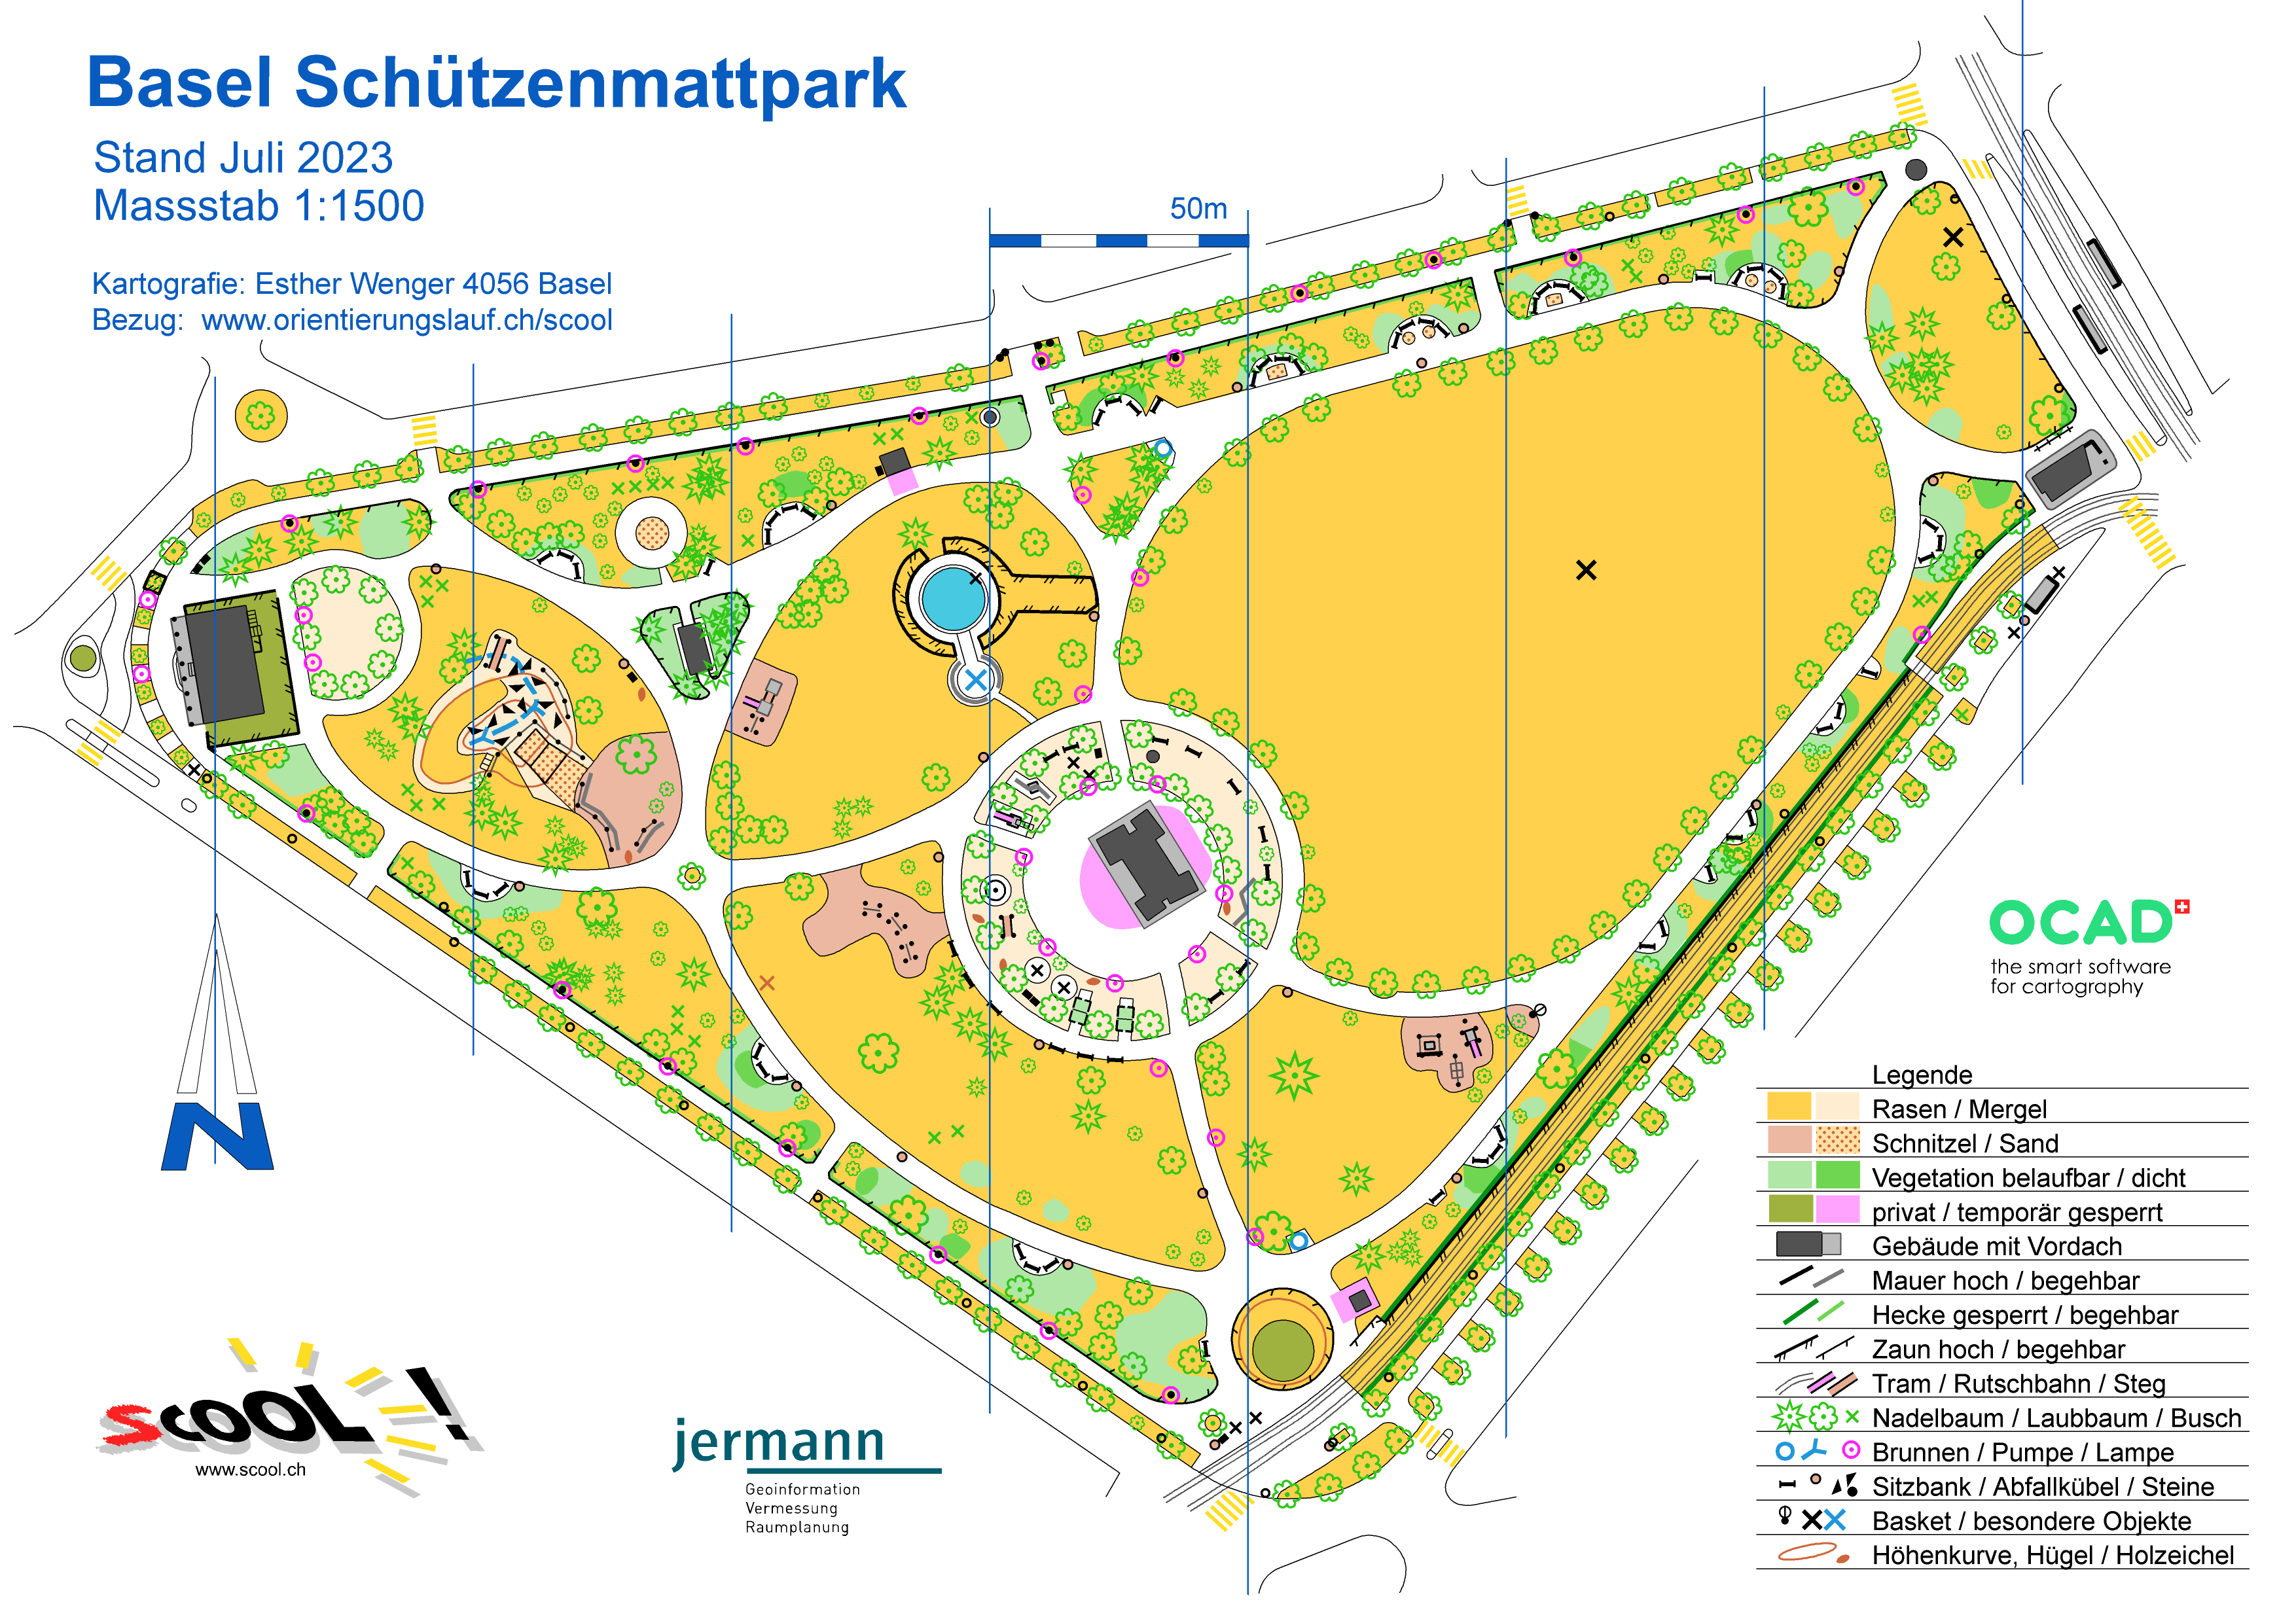 Basel Schützenmattpark